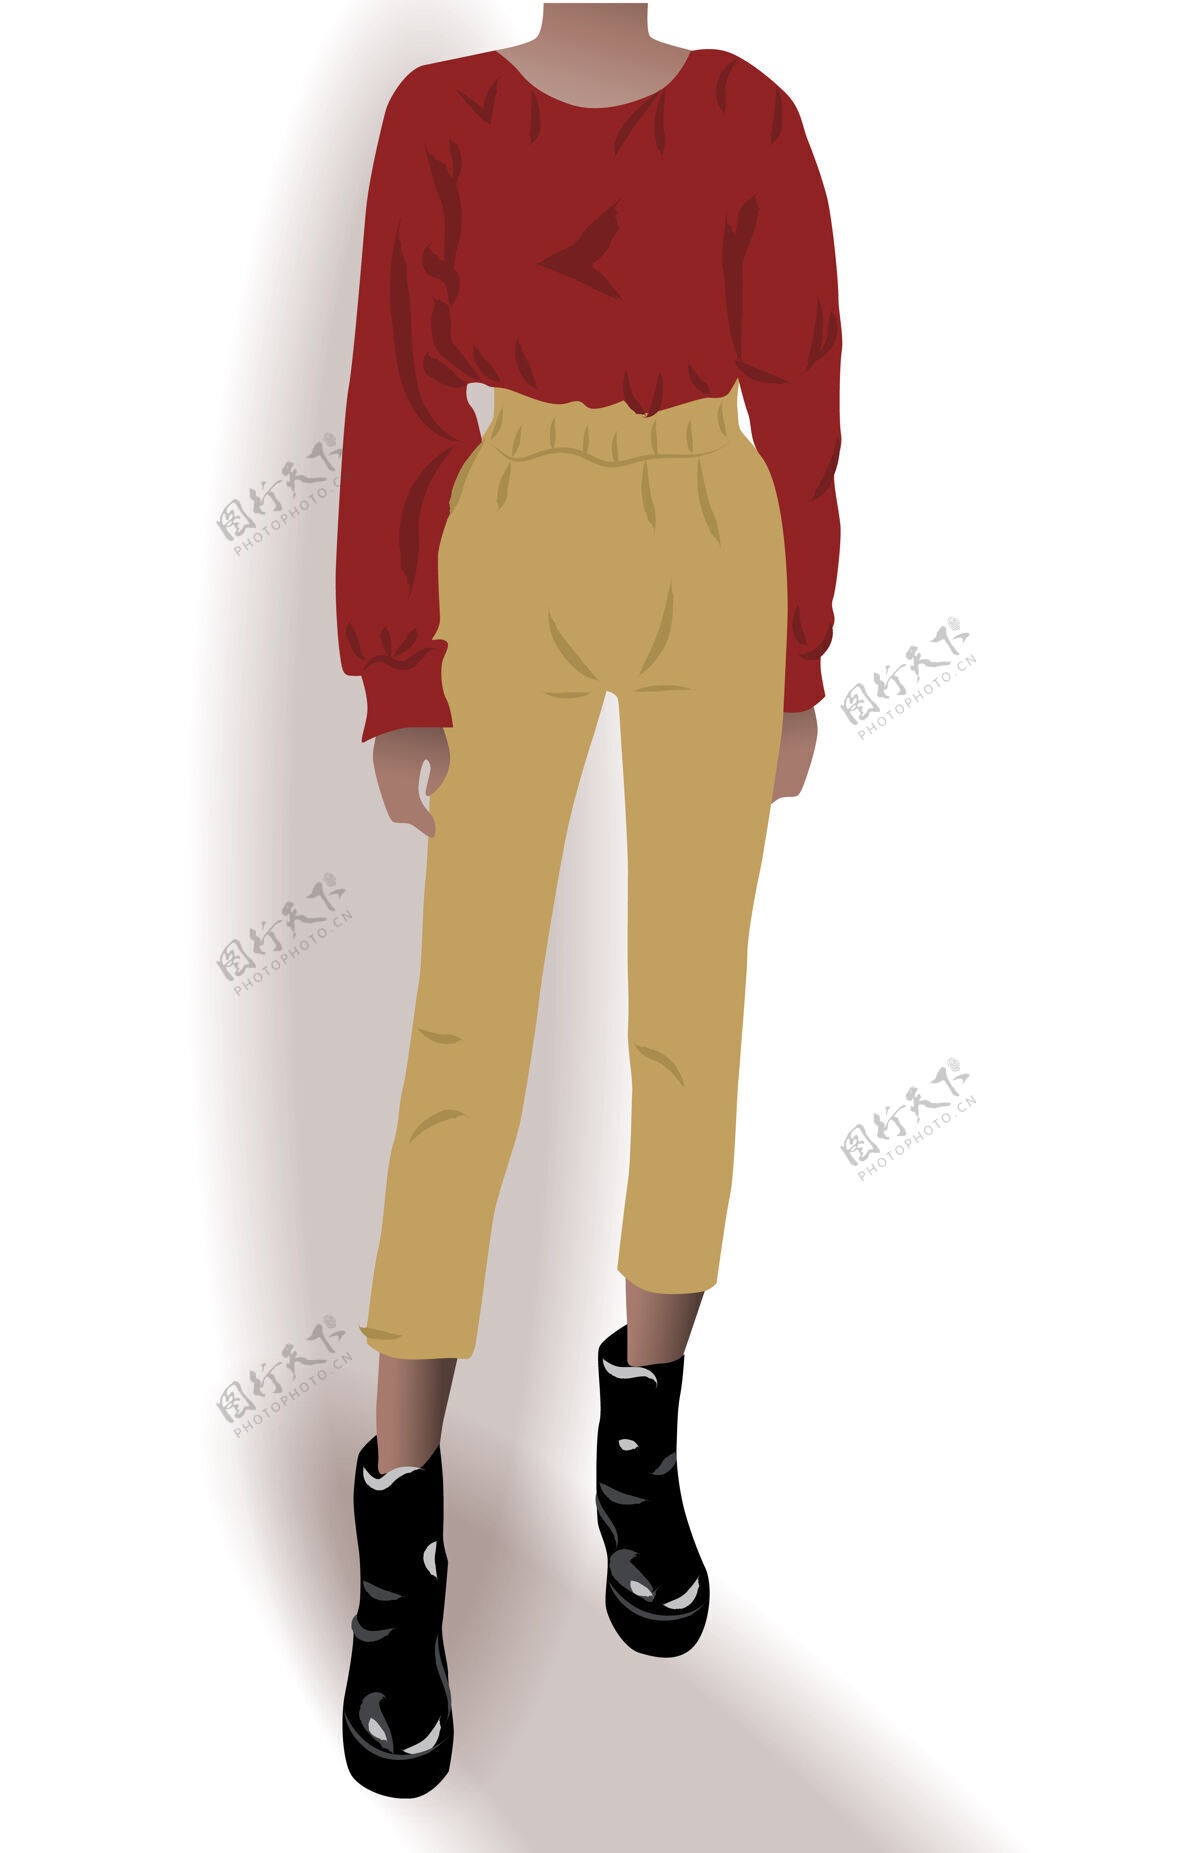 魅力穿黑鞋子黄裤子红衬衫的女孩摆姿势时尚装束插图